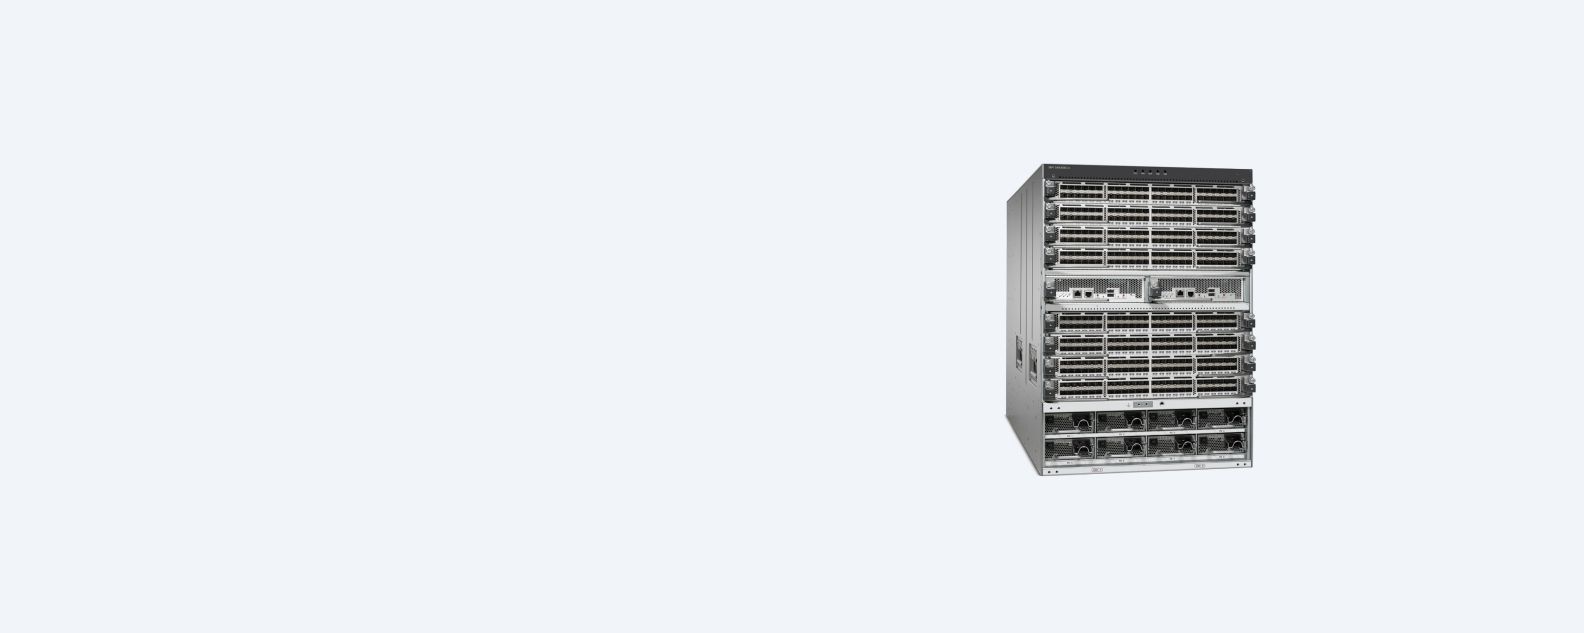 Captura de pantalla de producto del conmutador IBM Storage Networking SAN384C-6 Multilayer Director